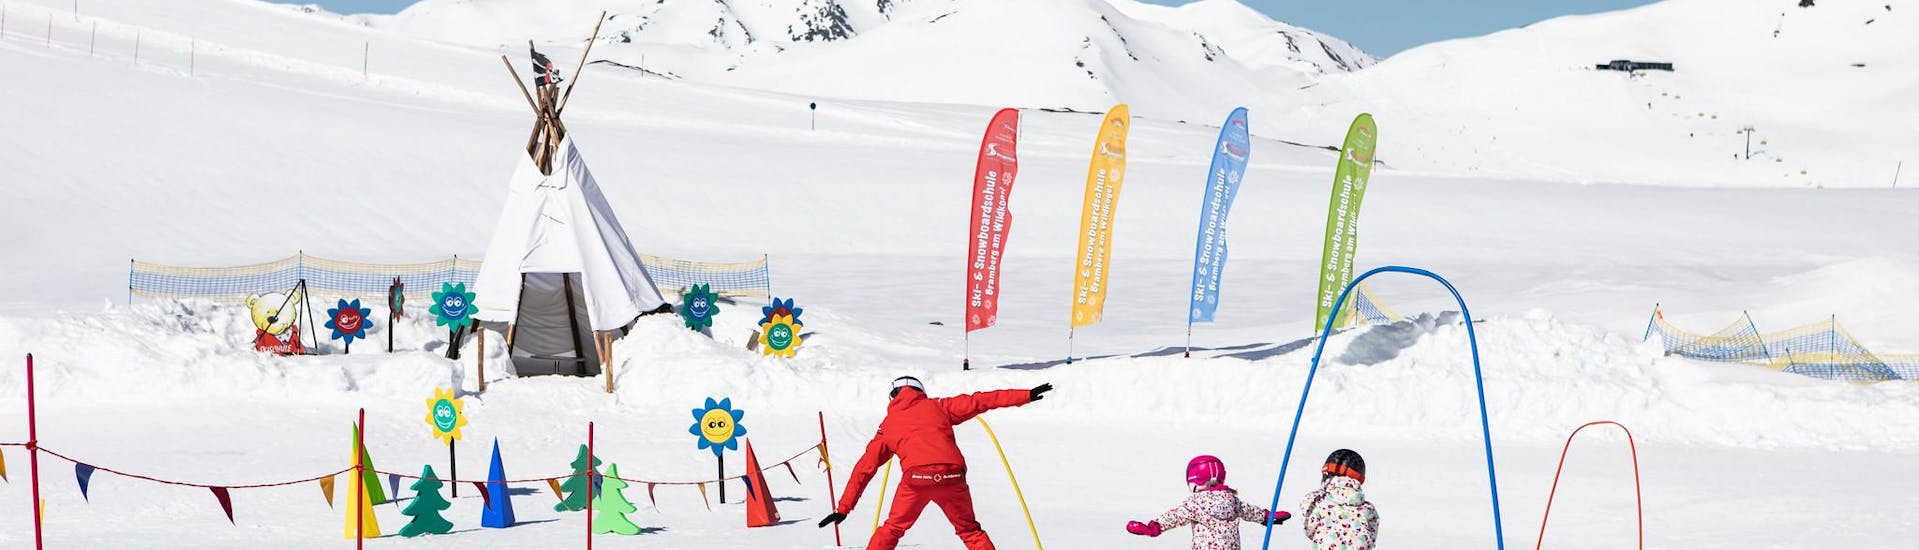 Ausblick auf die sonnige Berglandschaft beim Skifahren lernen mit den Skischulen in der Wildkogel Arena.